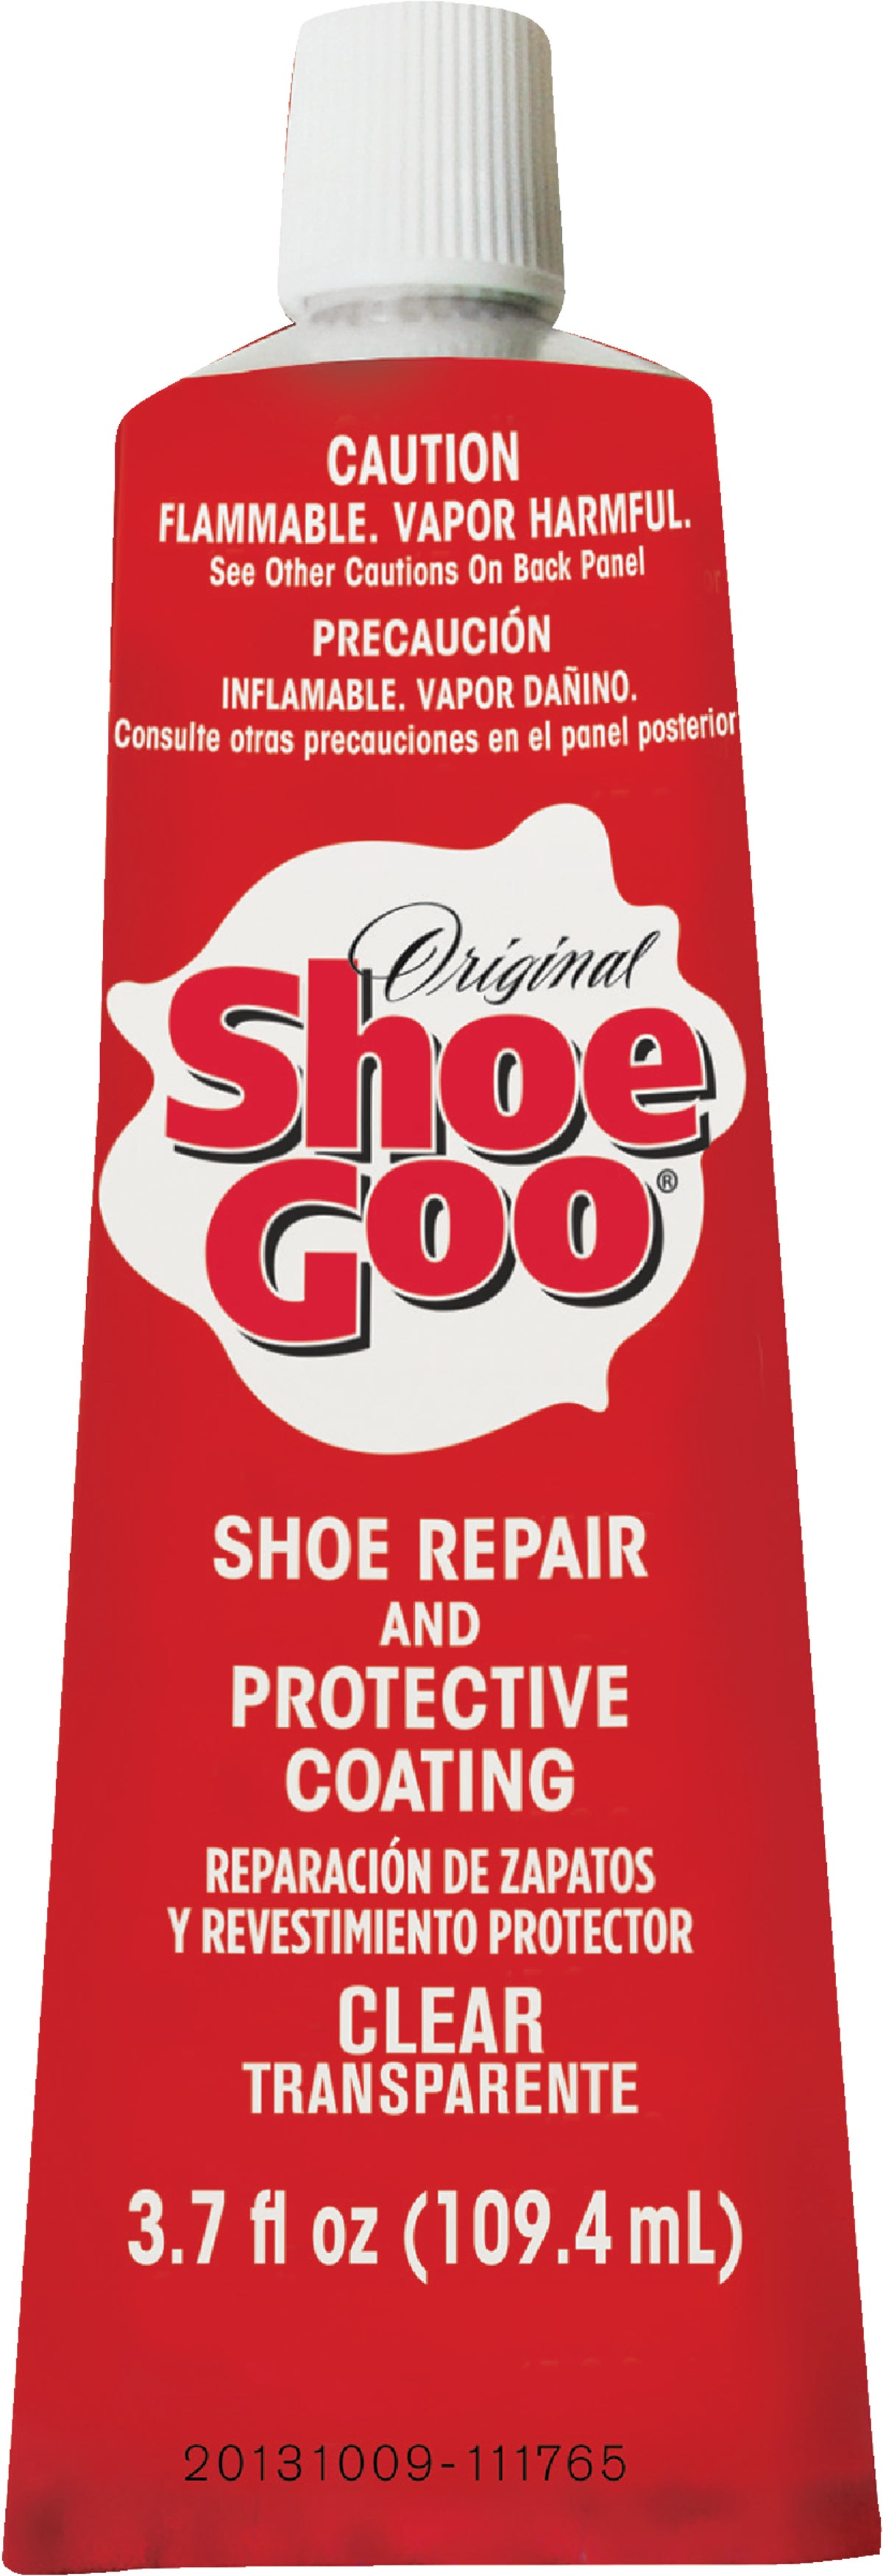 Shoe Goo – Walkabout Harnesses, LLC